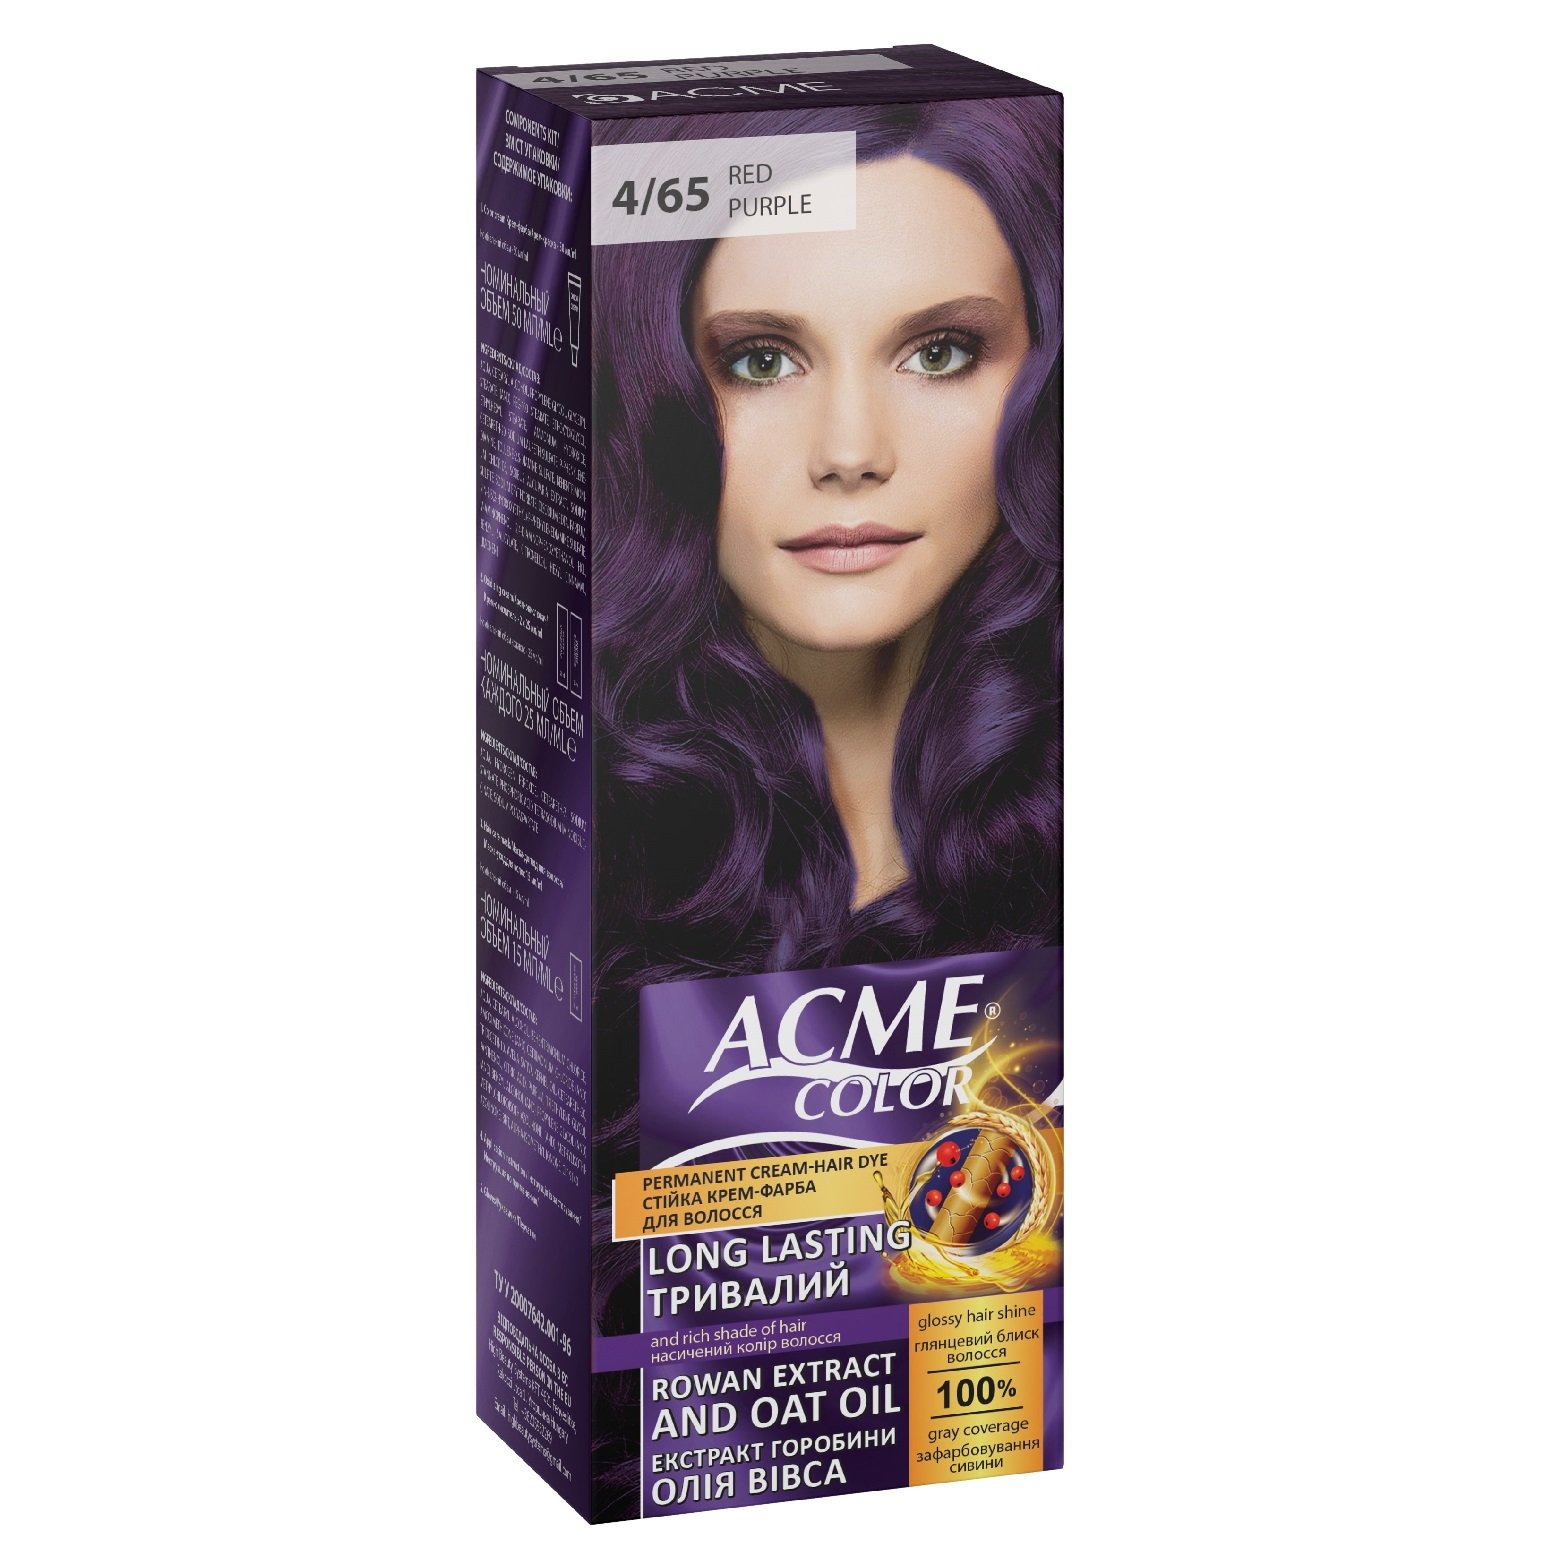 Крем-краска для волос Acme Color EXP, оттенок 4/65 (Красно-фиолетовый), 115 мл - фото 1